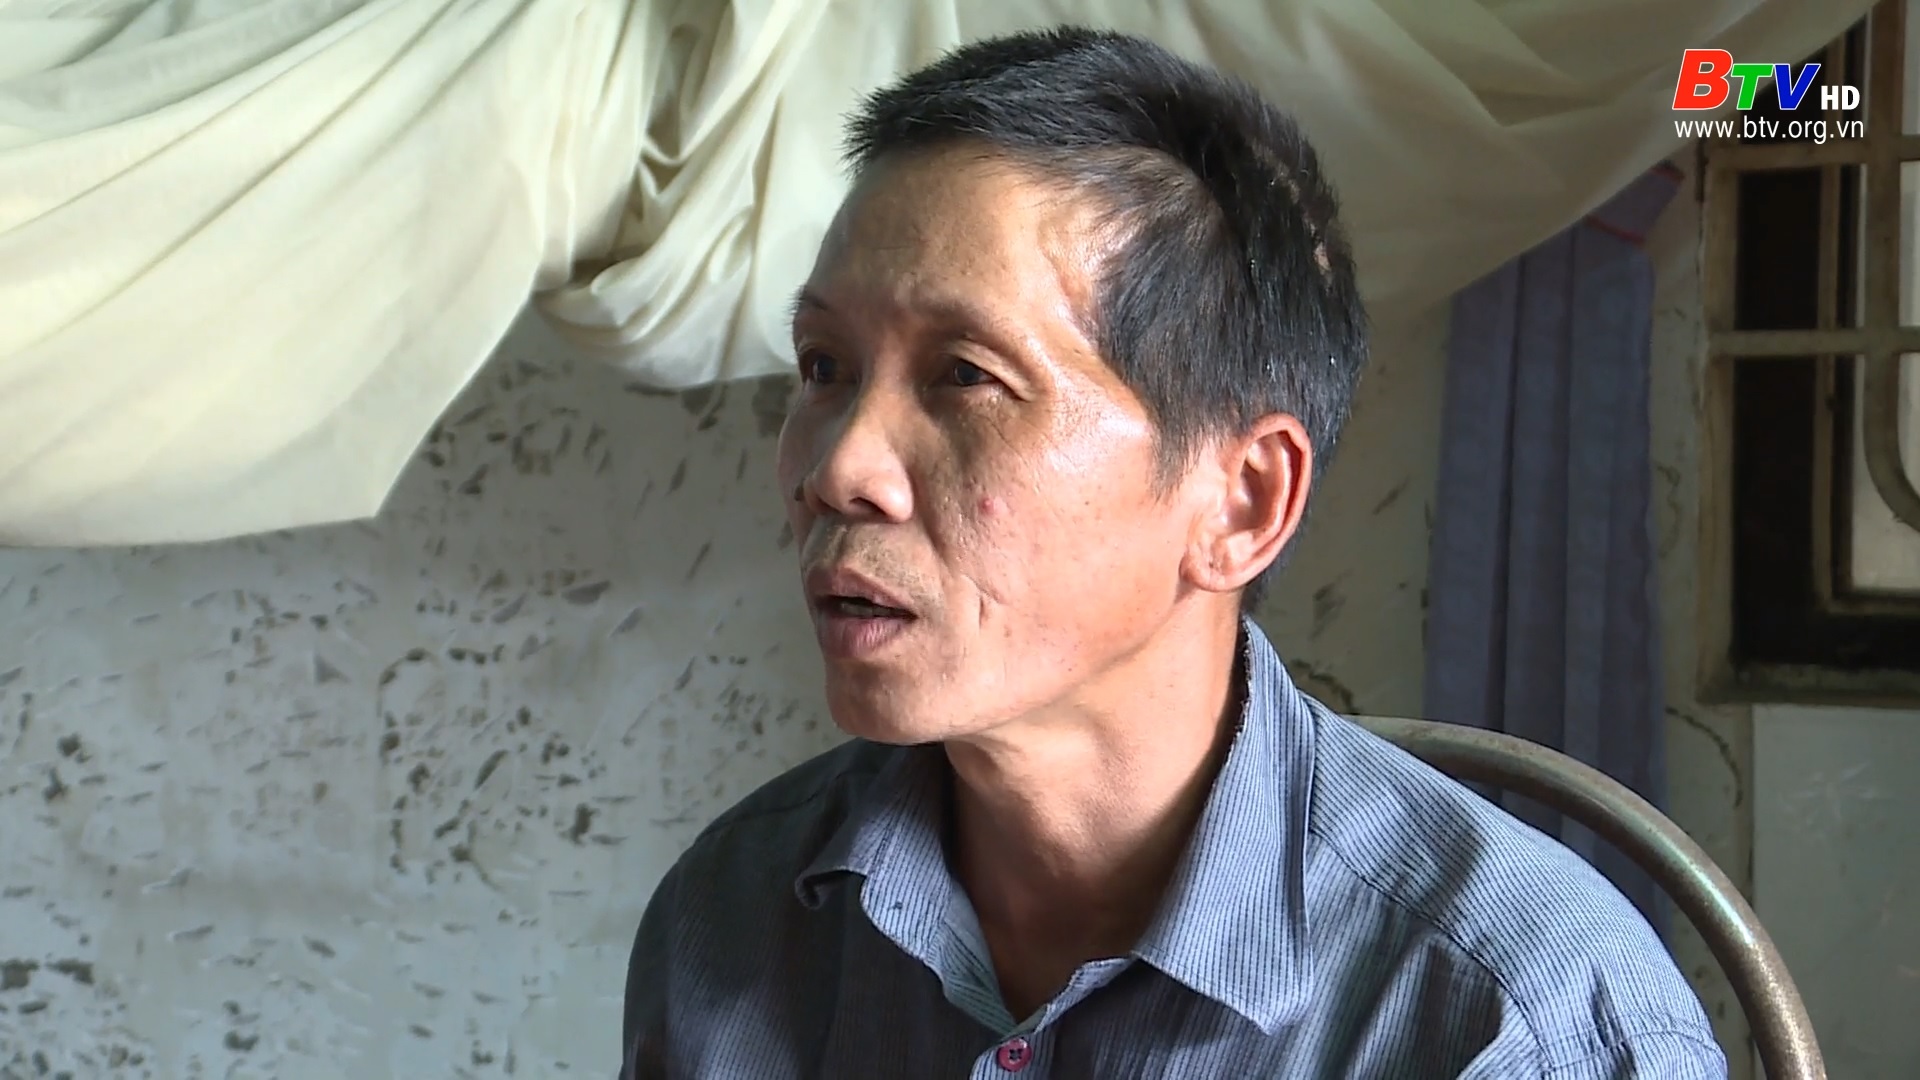 Hoàn cảnh gia đình anh Nguyễn Thanh Điệp - Phường Phú Lợi, TP Thủ Dầu Một - tỉnh Bình Dương